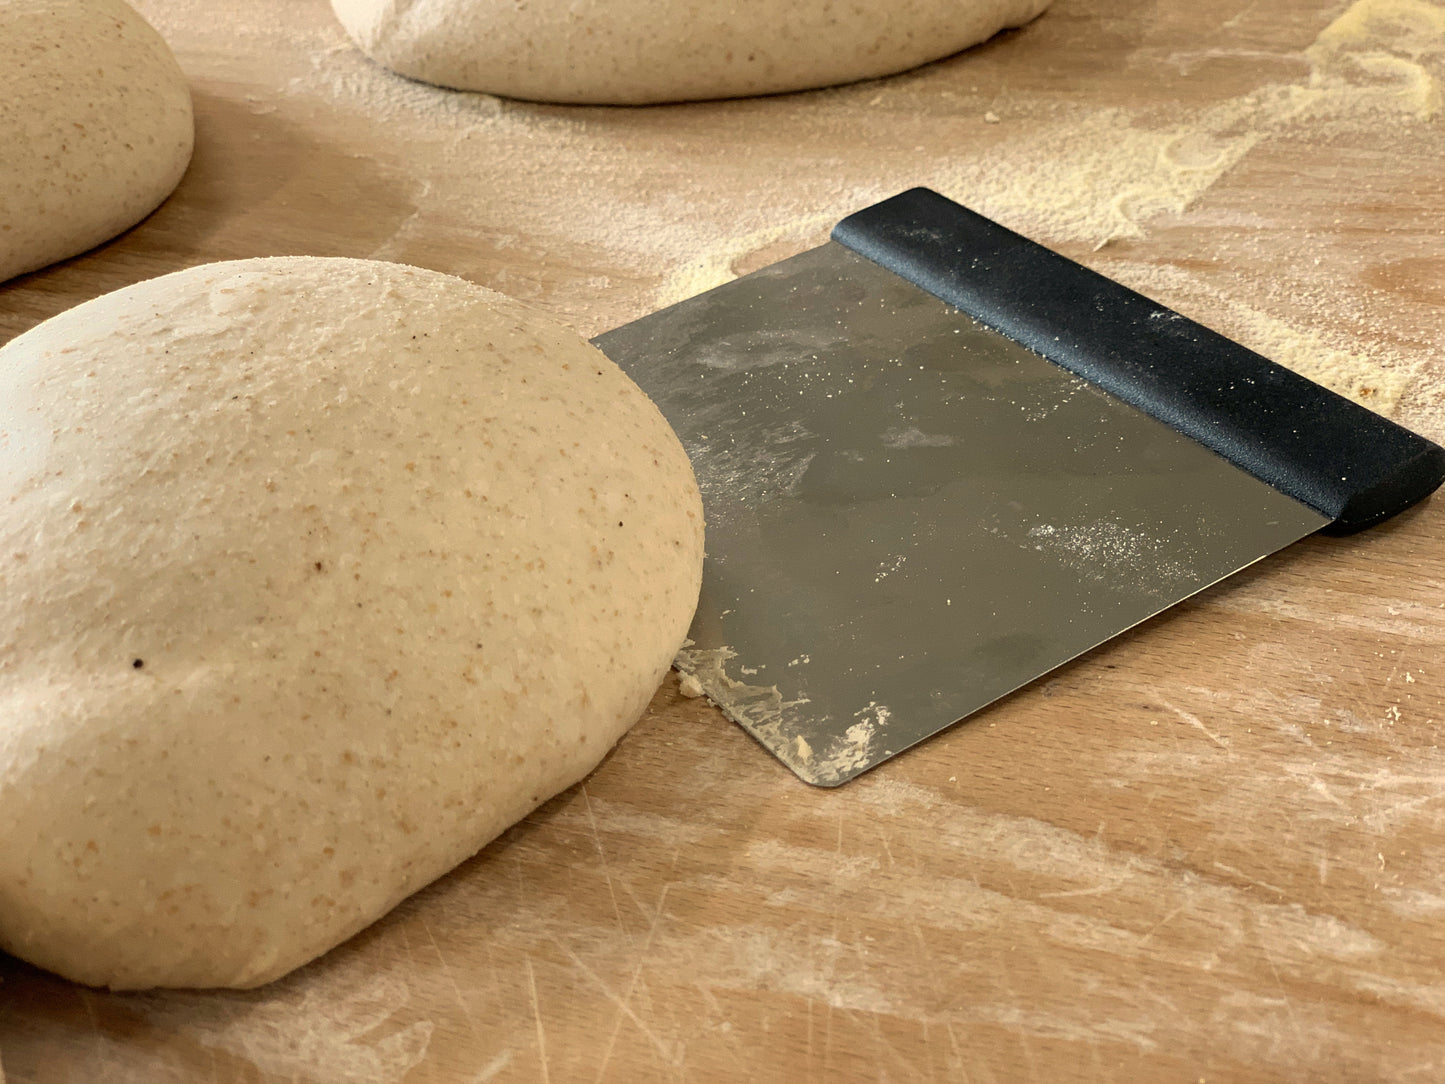 Dough scraper LEHRMANN / baker's spatula made of stainless steel